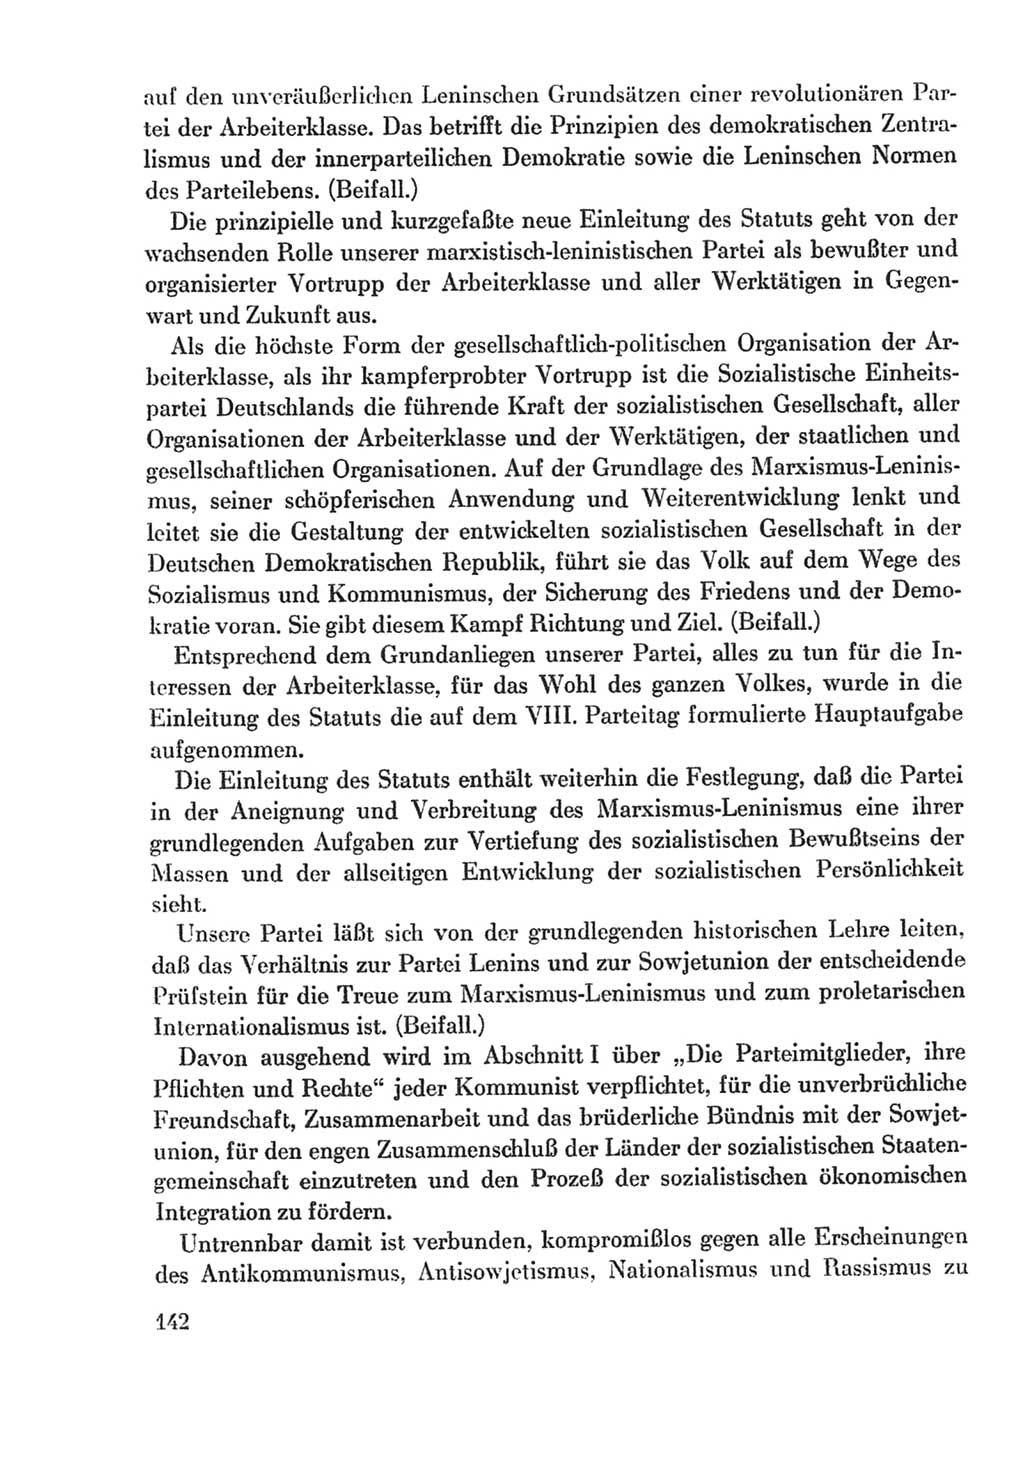 Protokoll der Verhandlungen des Ⅸ. Parteitages der Sozialistischen Einheitspartei Deutschlands (SED) [Deutsche Demokratische Republik (DDR)] 1976, Band 2, Seite 142 (Prot. Verh. Ⅸ. PT SED DDR 1976, Bd. 2, S. 142)